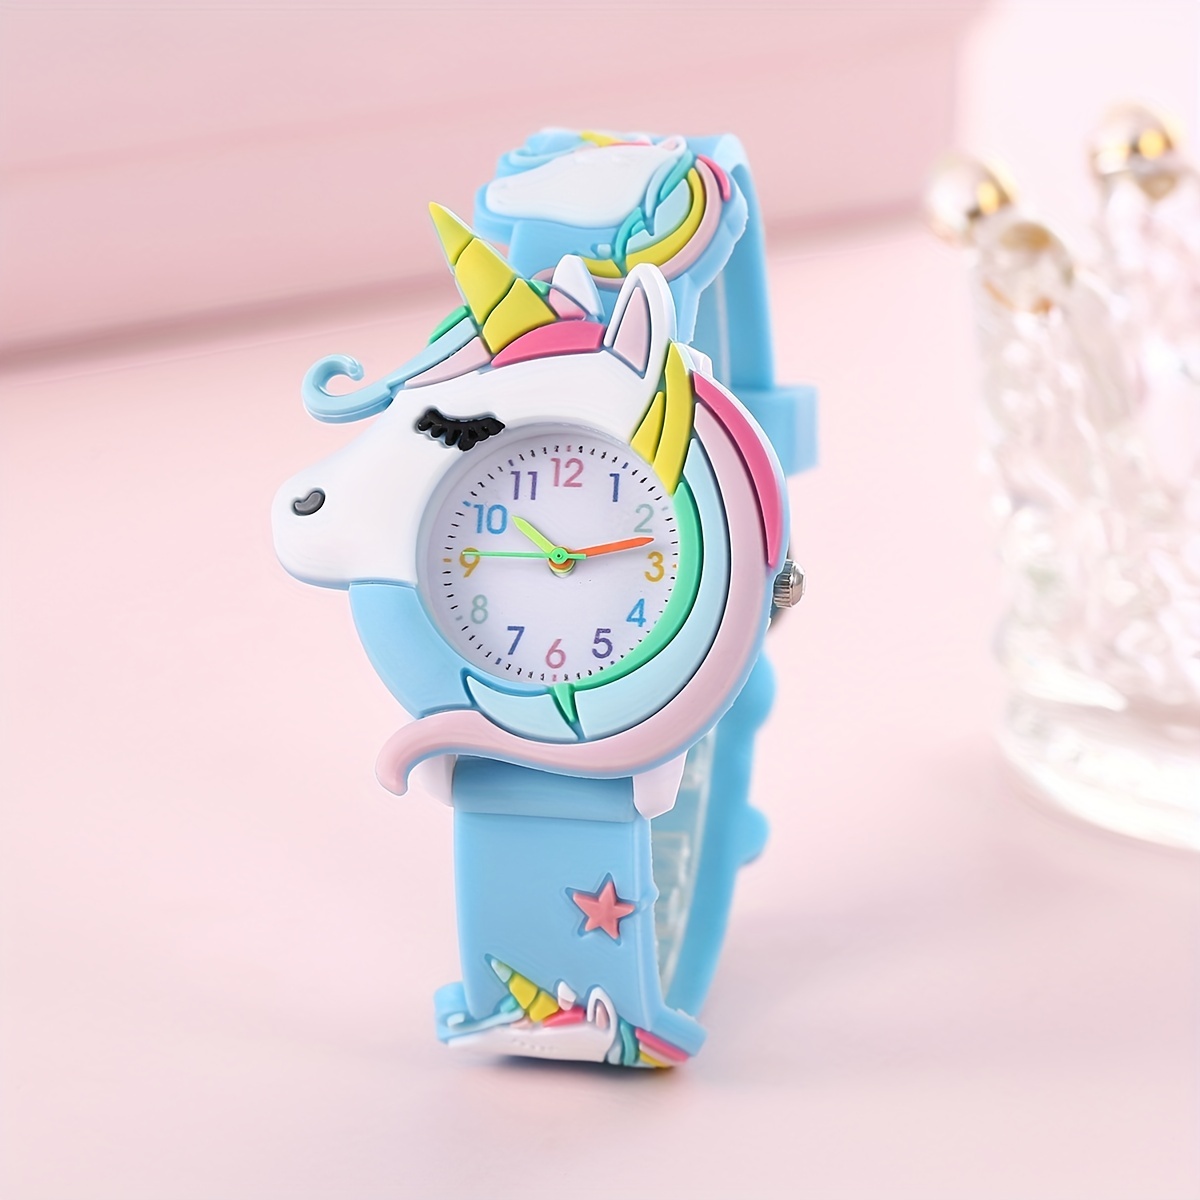 Reloj para niños con dibujos animados lindos, impermeable, portátil,  ajustable, regalo de cumpleaños para niñas de 3 a 8 años, color blanco